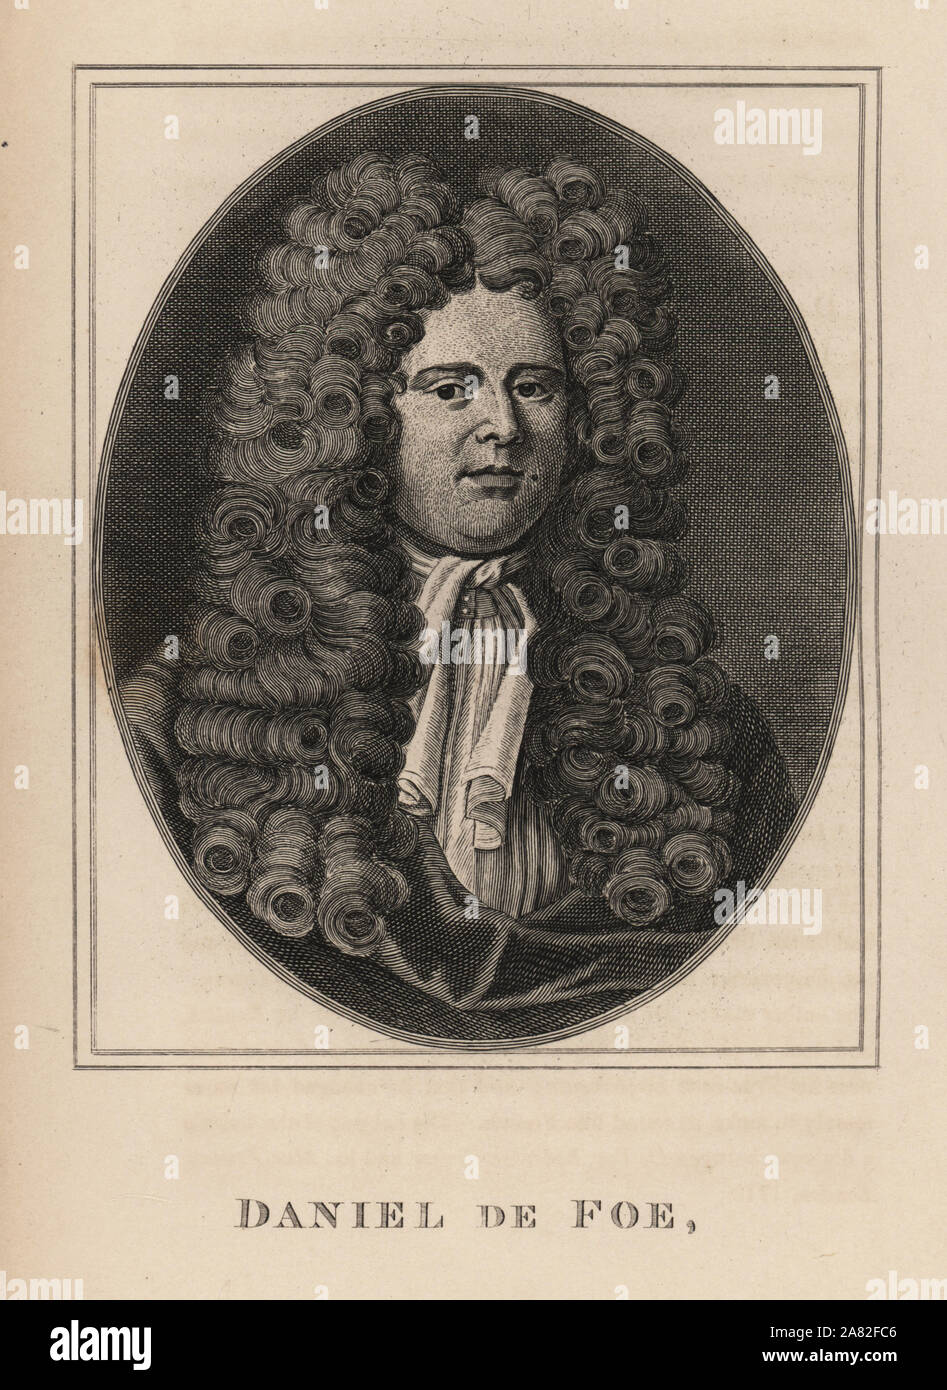 Daniel de Foe, autor de Robinson Crusoe. Grabado de James Caulfield, memorias y retratos de personajes de personas notables, Londres, 1819. Foto de stock